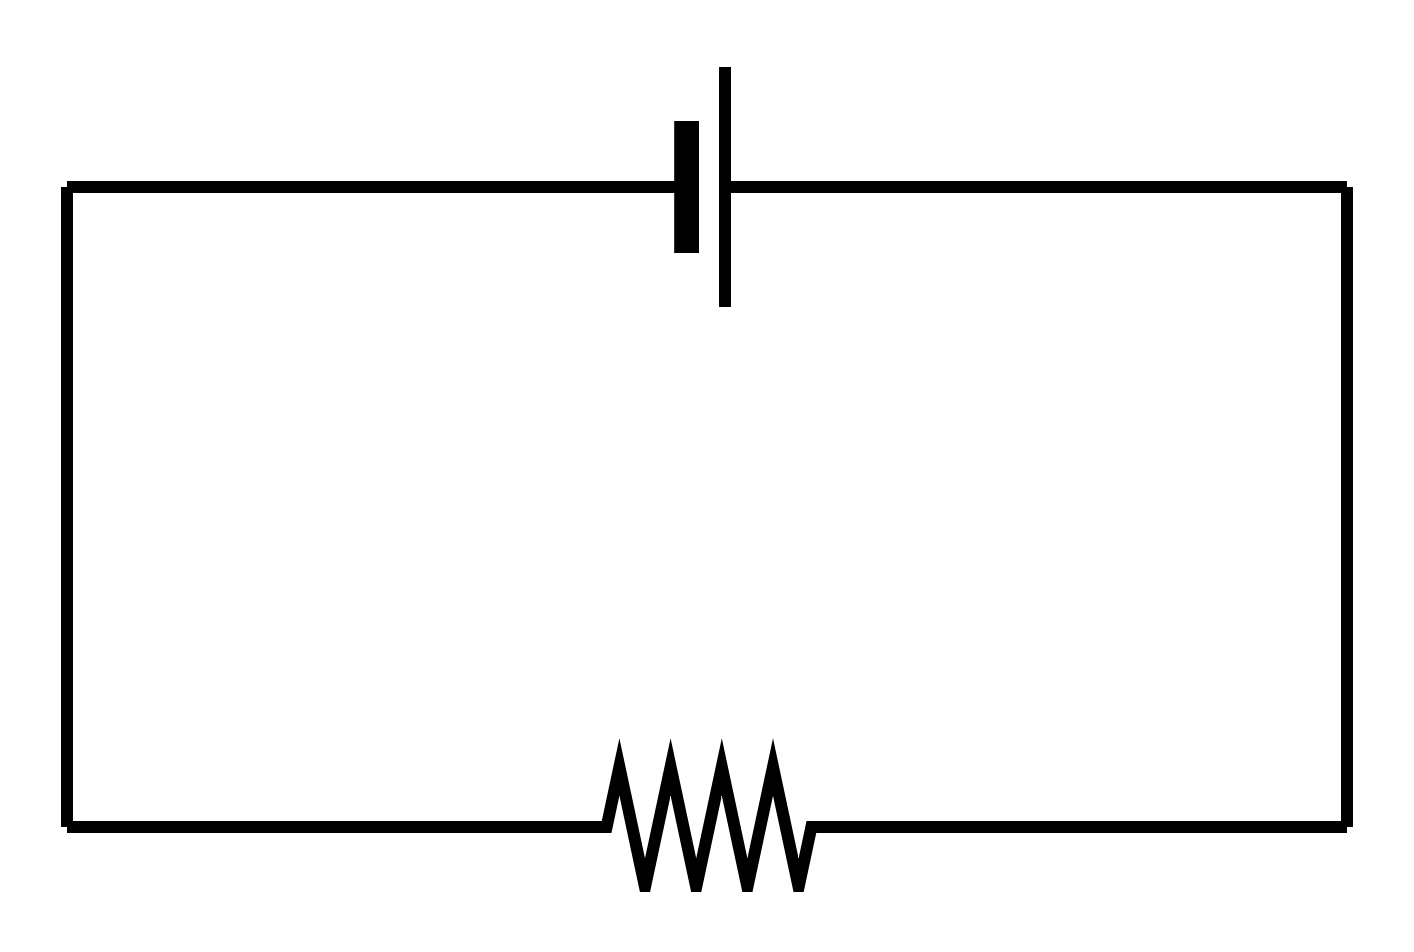 図1-2-1-1.電気回路(電子回路)